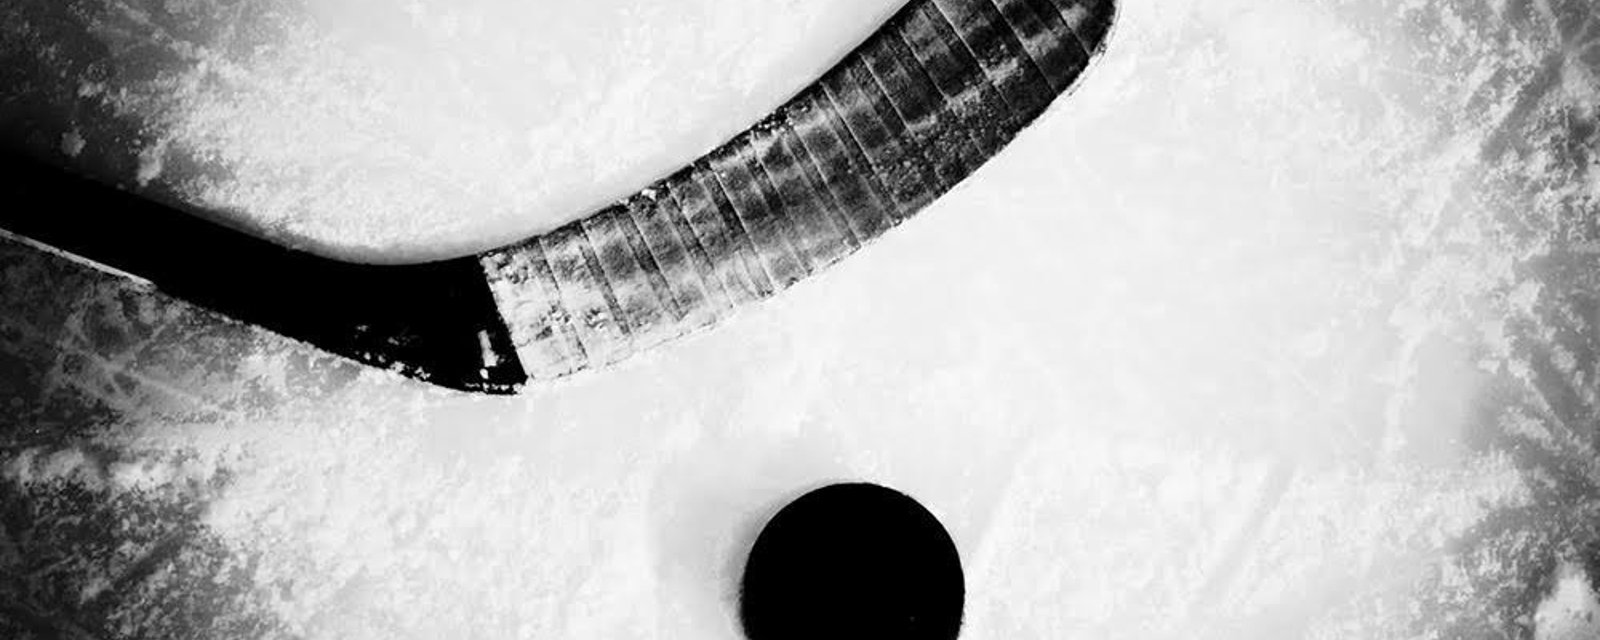 Un joueur de hockey tué par ses coéquipiers dans le vestiaire!